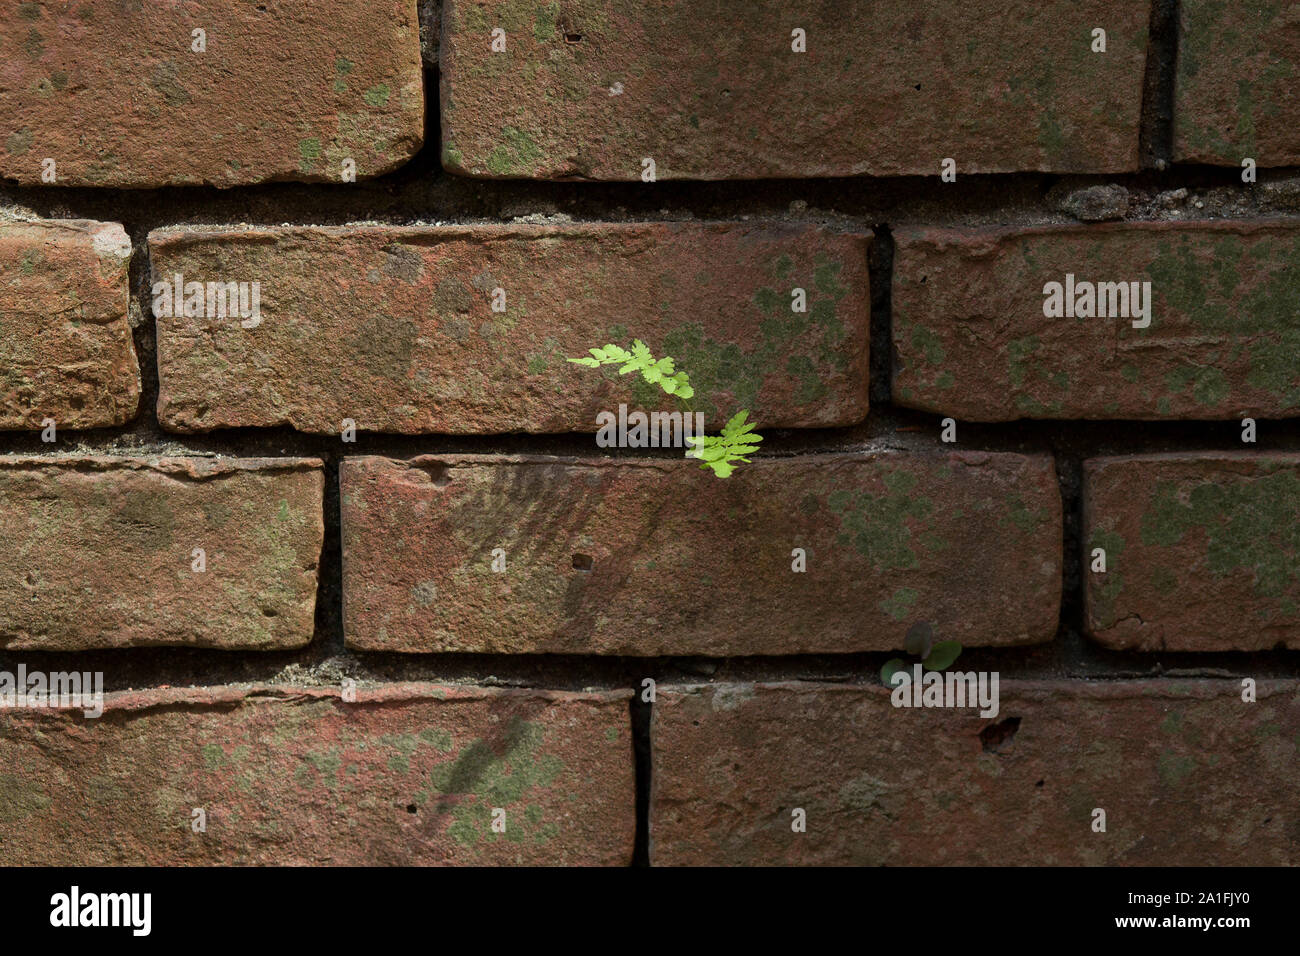 Une petite fougère conserve une place sur un mur de briques. Banque D'Images